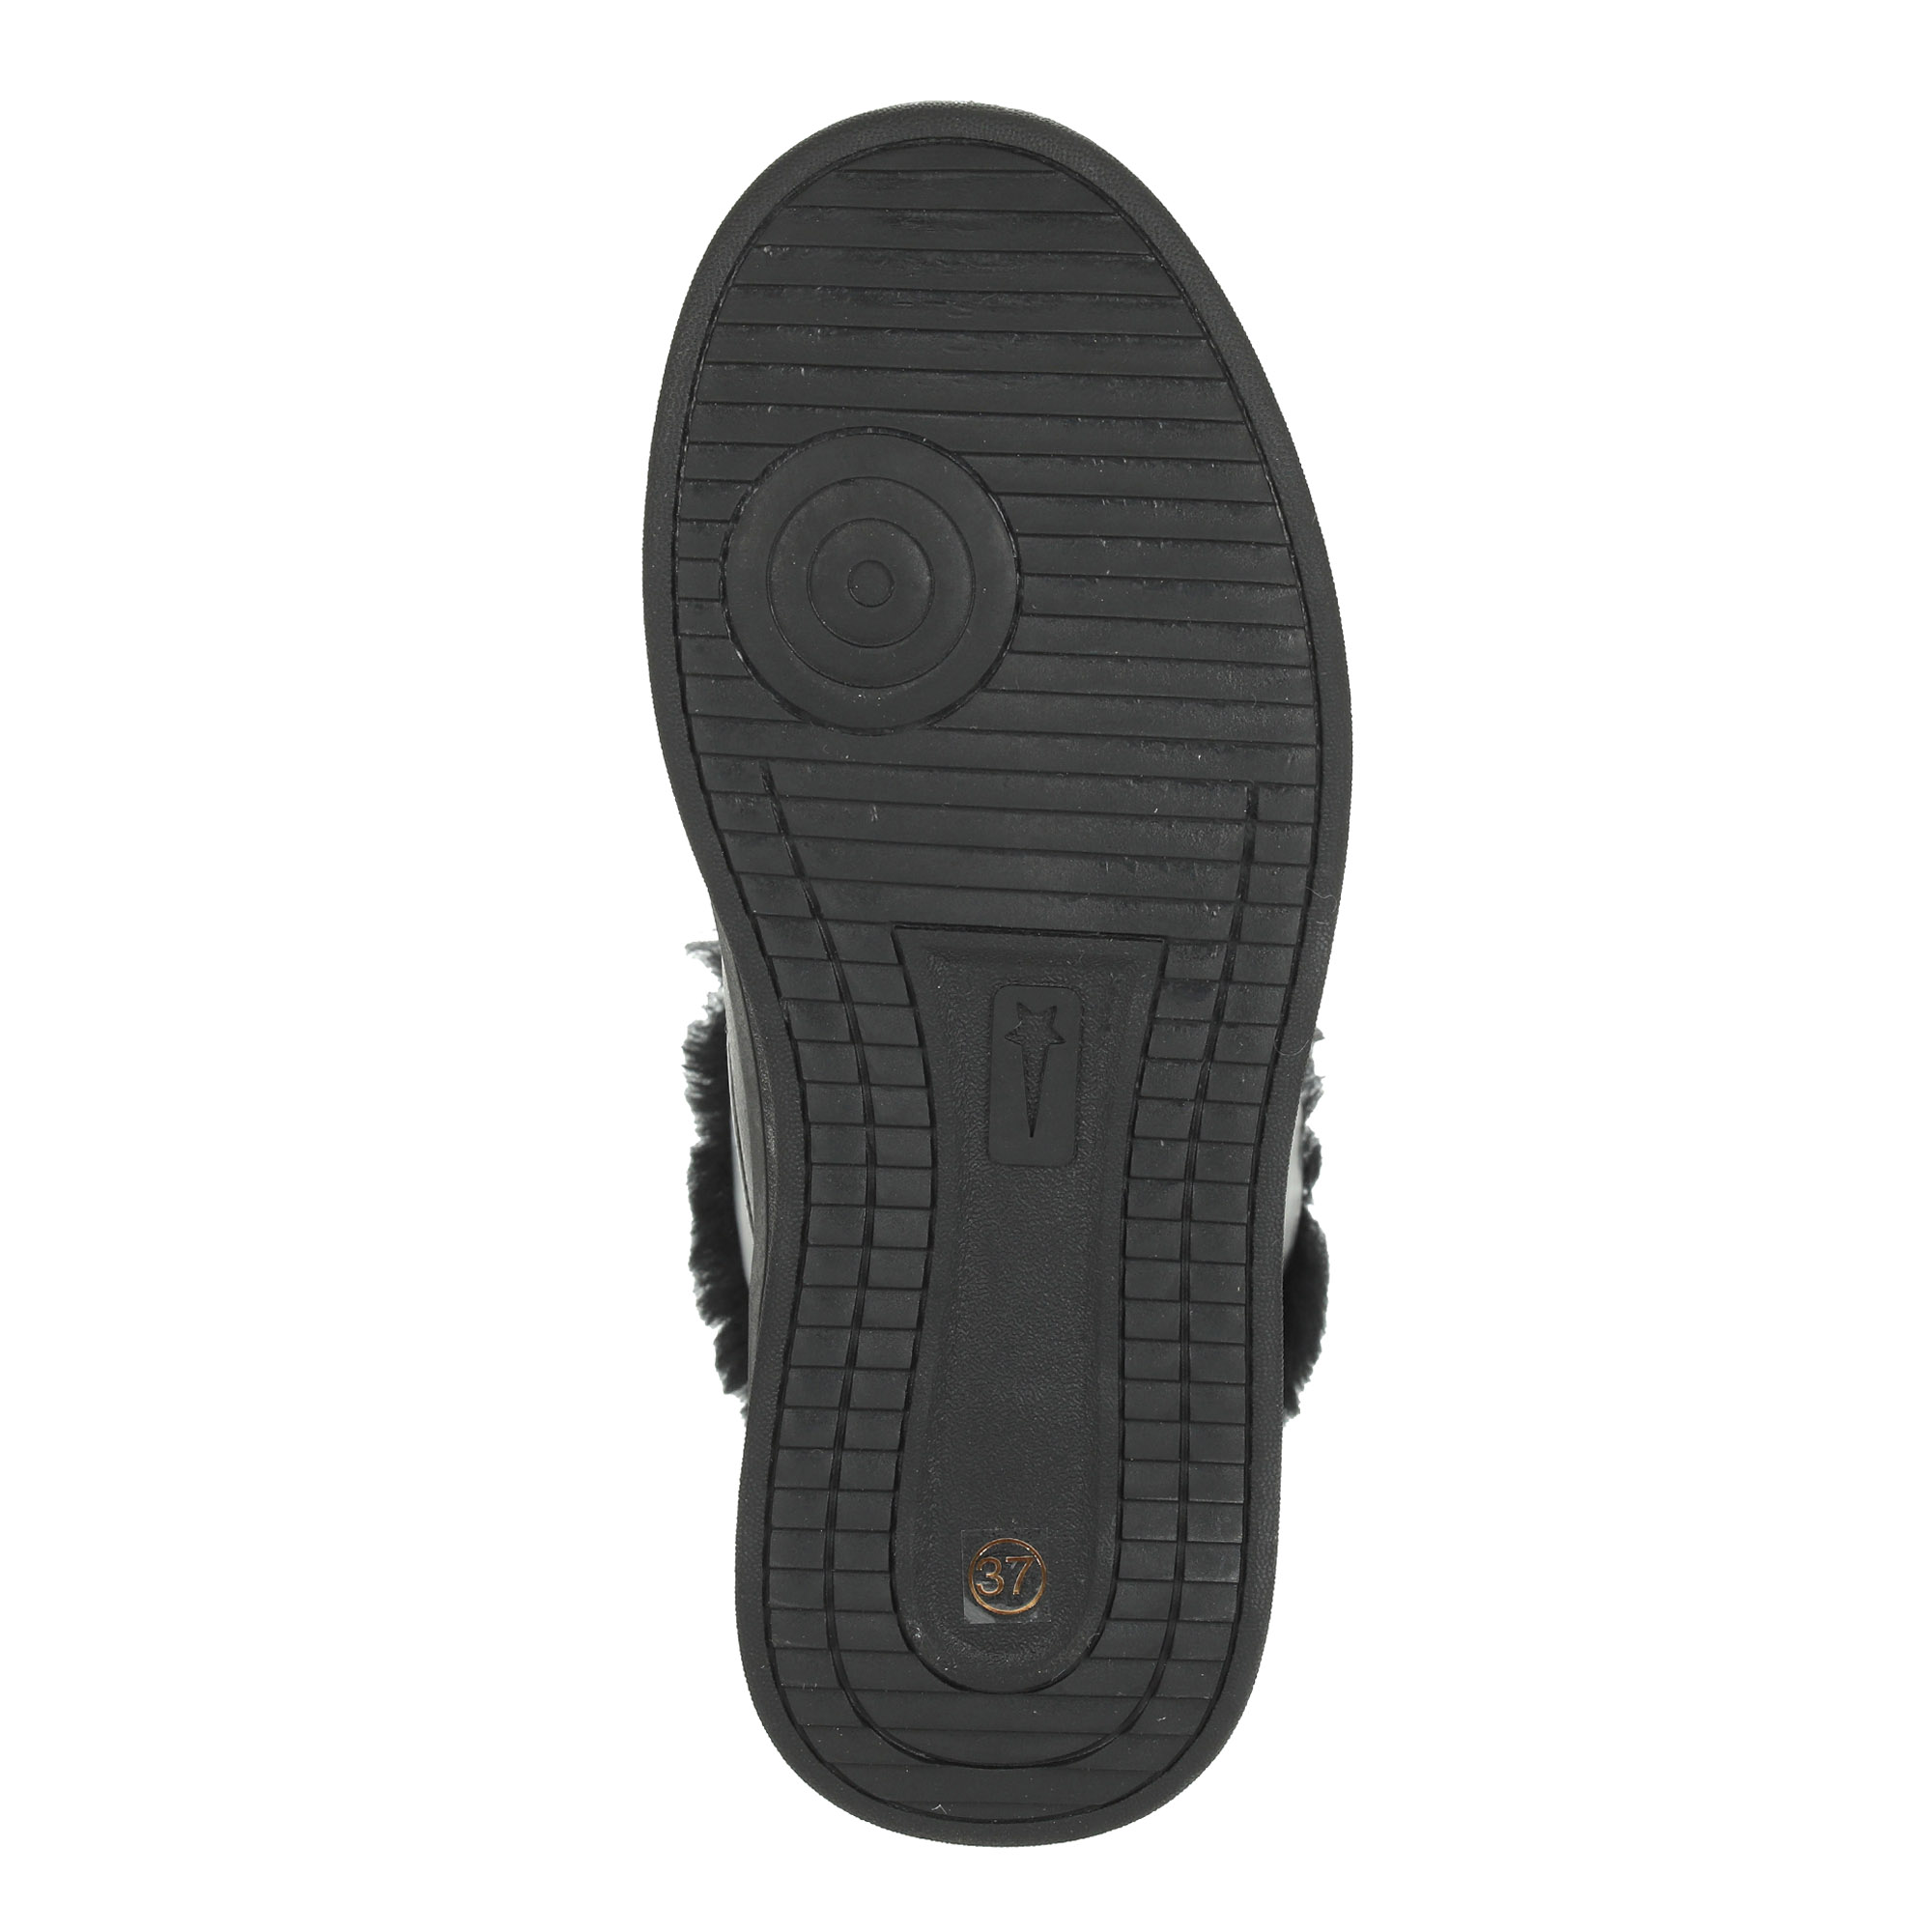 Черные высокие кроссовки из комбинированных материалов смеховой опушкой на подкладке из натуральной шерсти на утолщенной платформе Respect, размер 40, цвет черный - фото 8